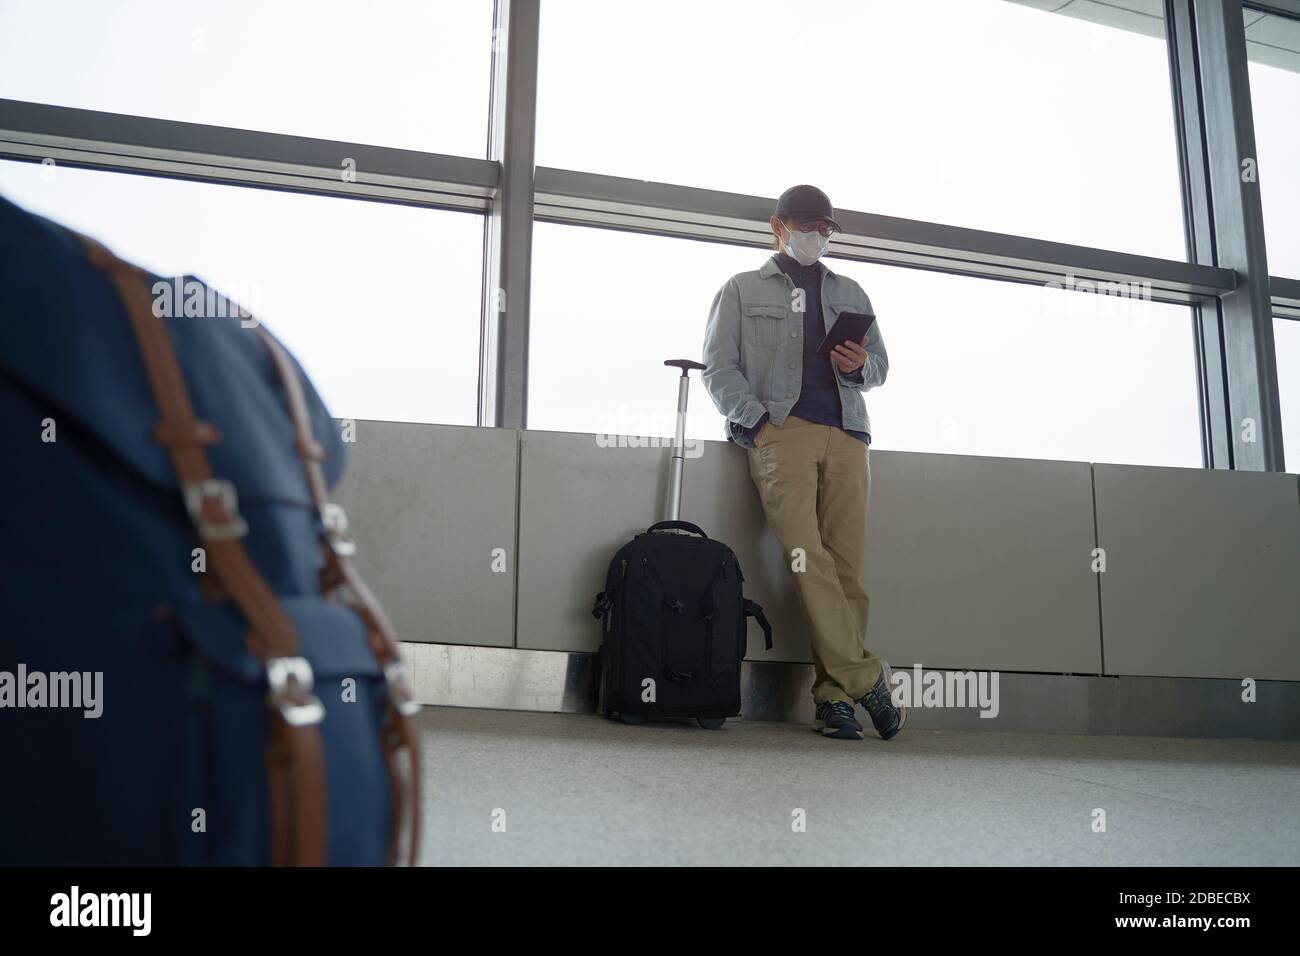 giovane asiatico uomo maschile viaggiatore aria lettura e-book utilizzando un e-reader durante l'attesa dell'imbarco nell'edificio del terminal dell'aeroporto Foto Stock